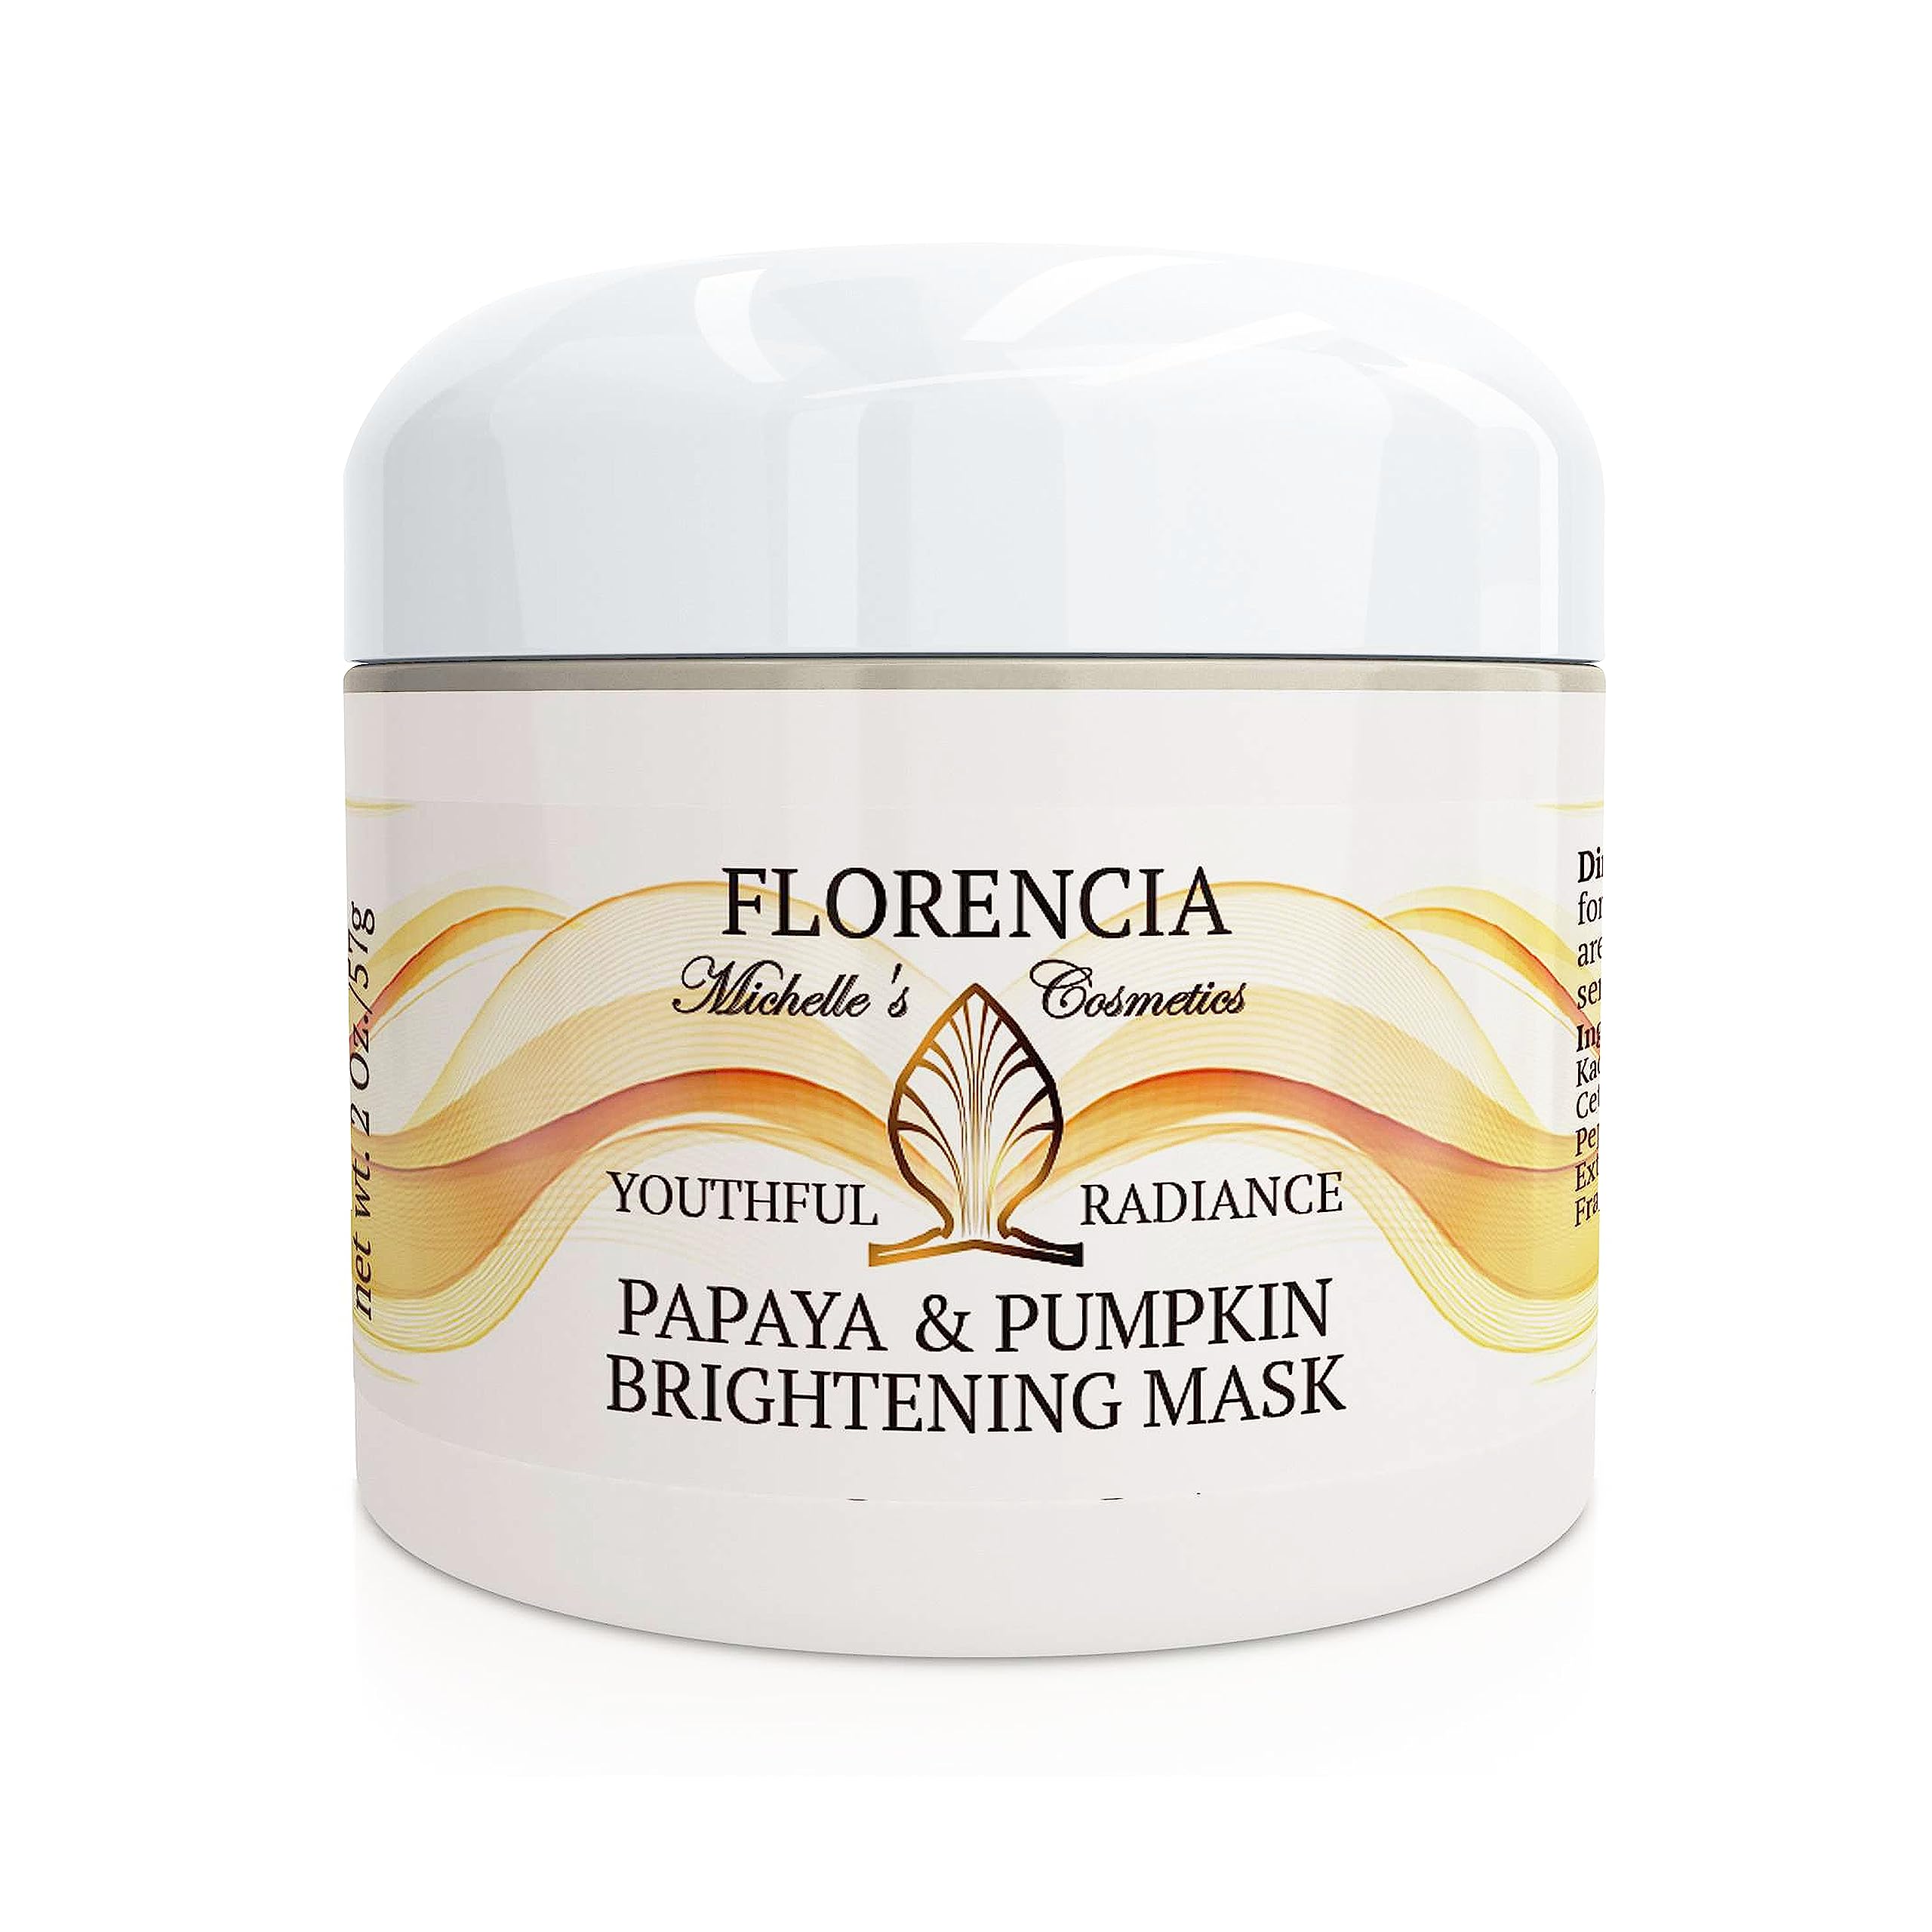 Florencia Papaya & Pumpkin Brightening Mask. Natural, Exfoliating, Skin Softening & Smoothing Facial Mask. Gently Removes Impuri